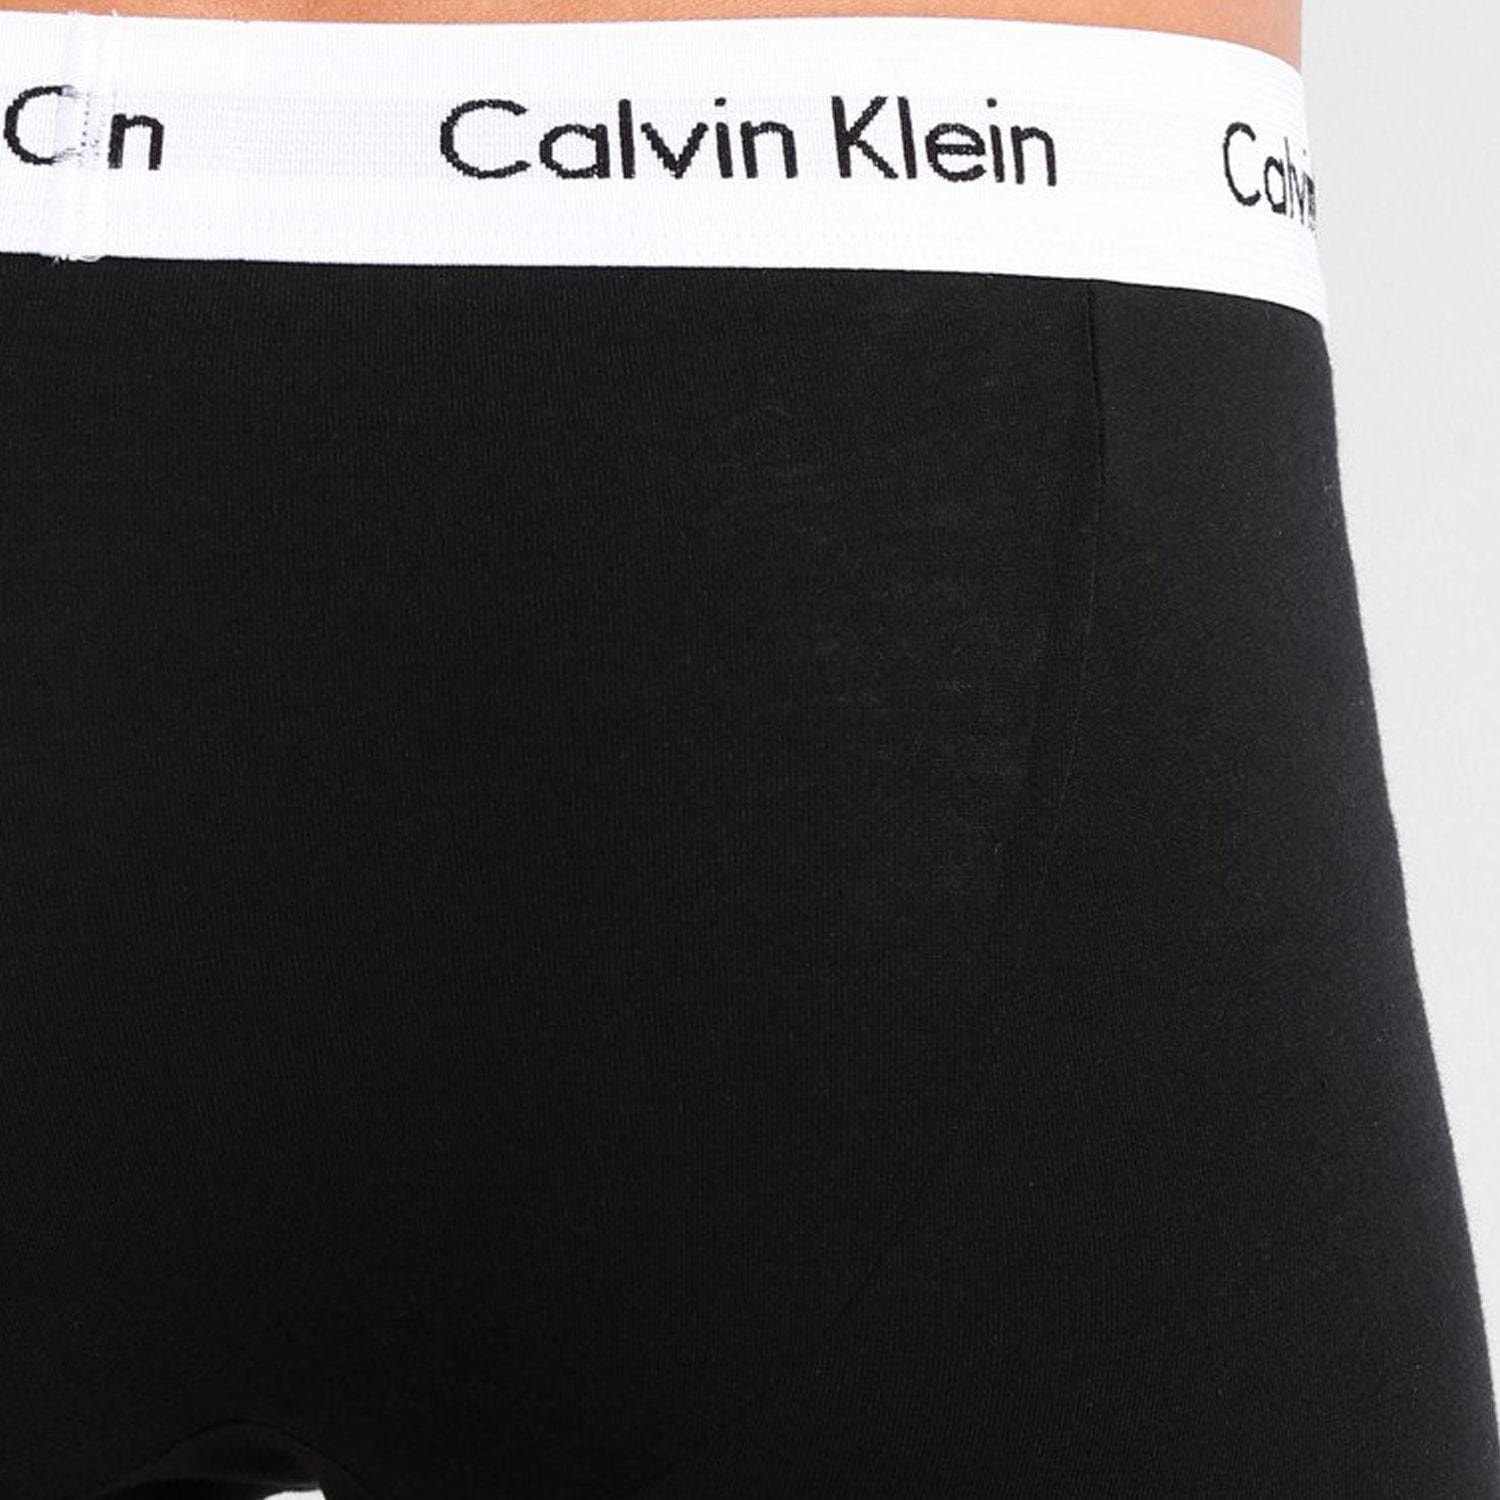 Calvin Klein 3-Pack Trunks (6 av 10)